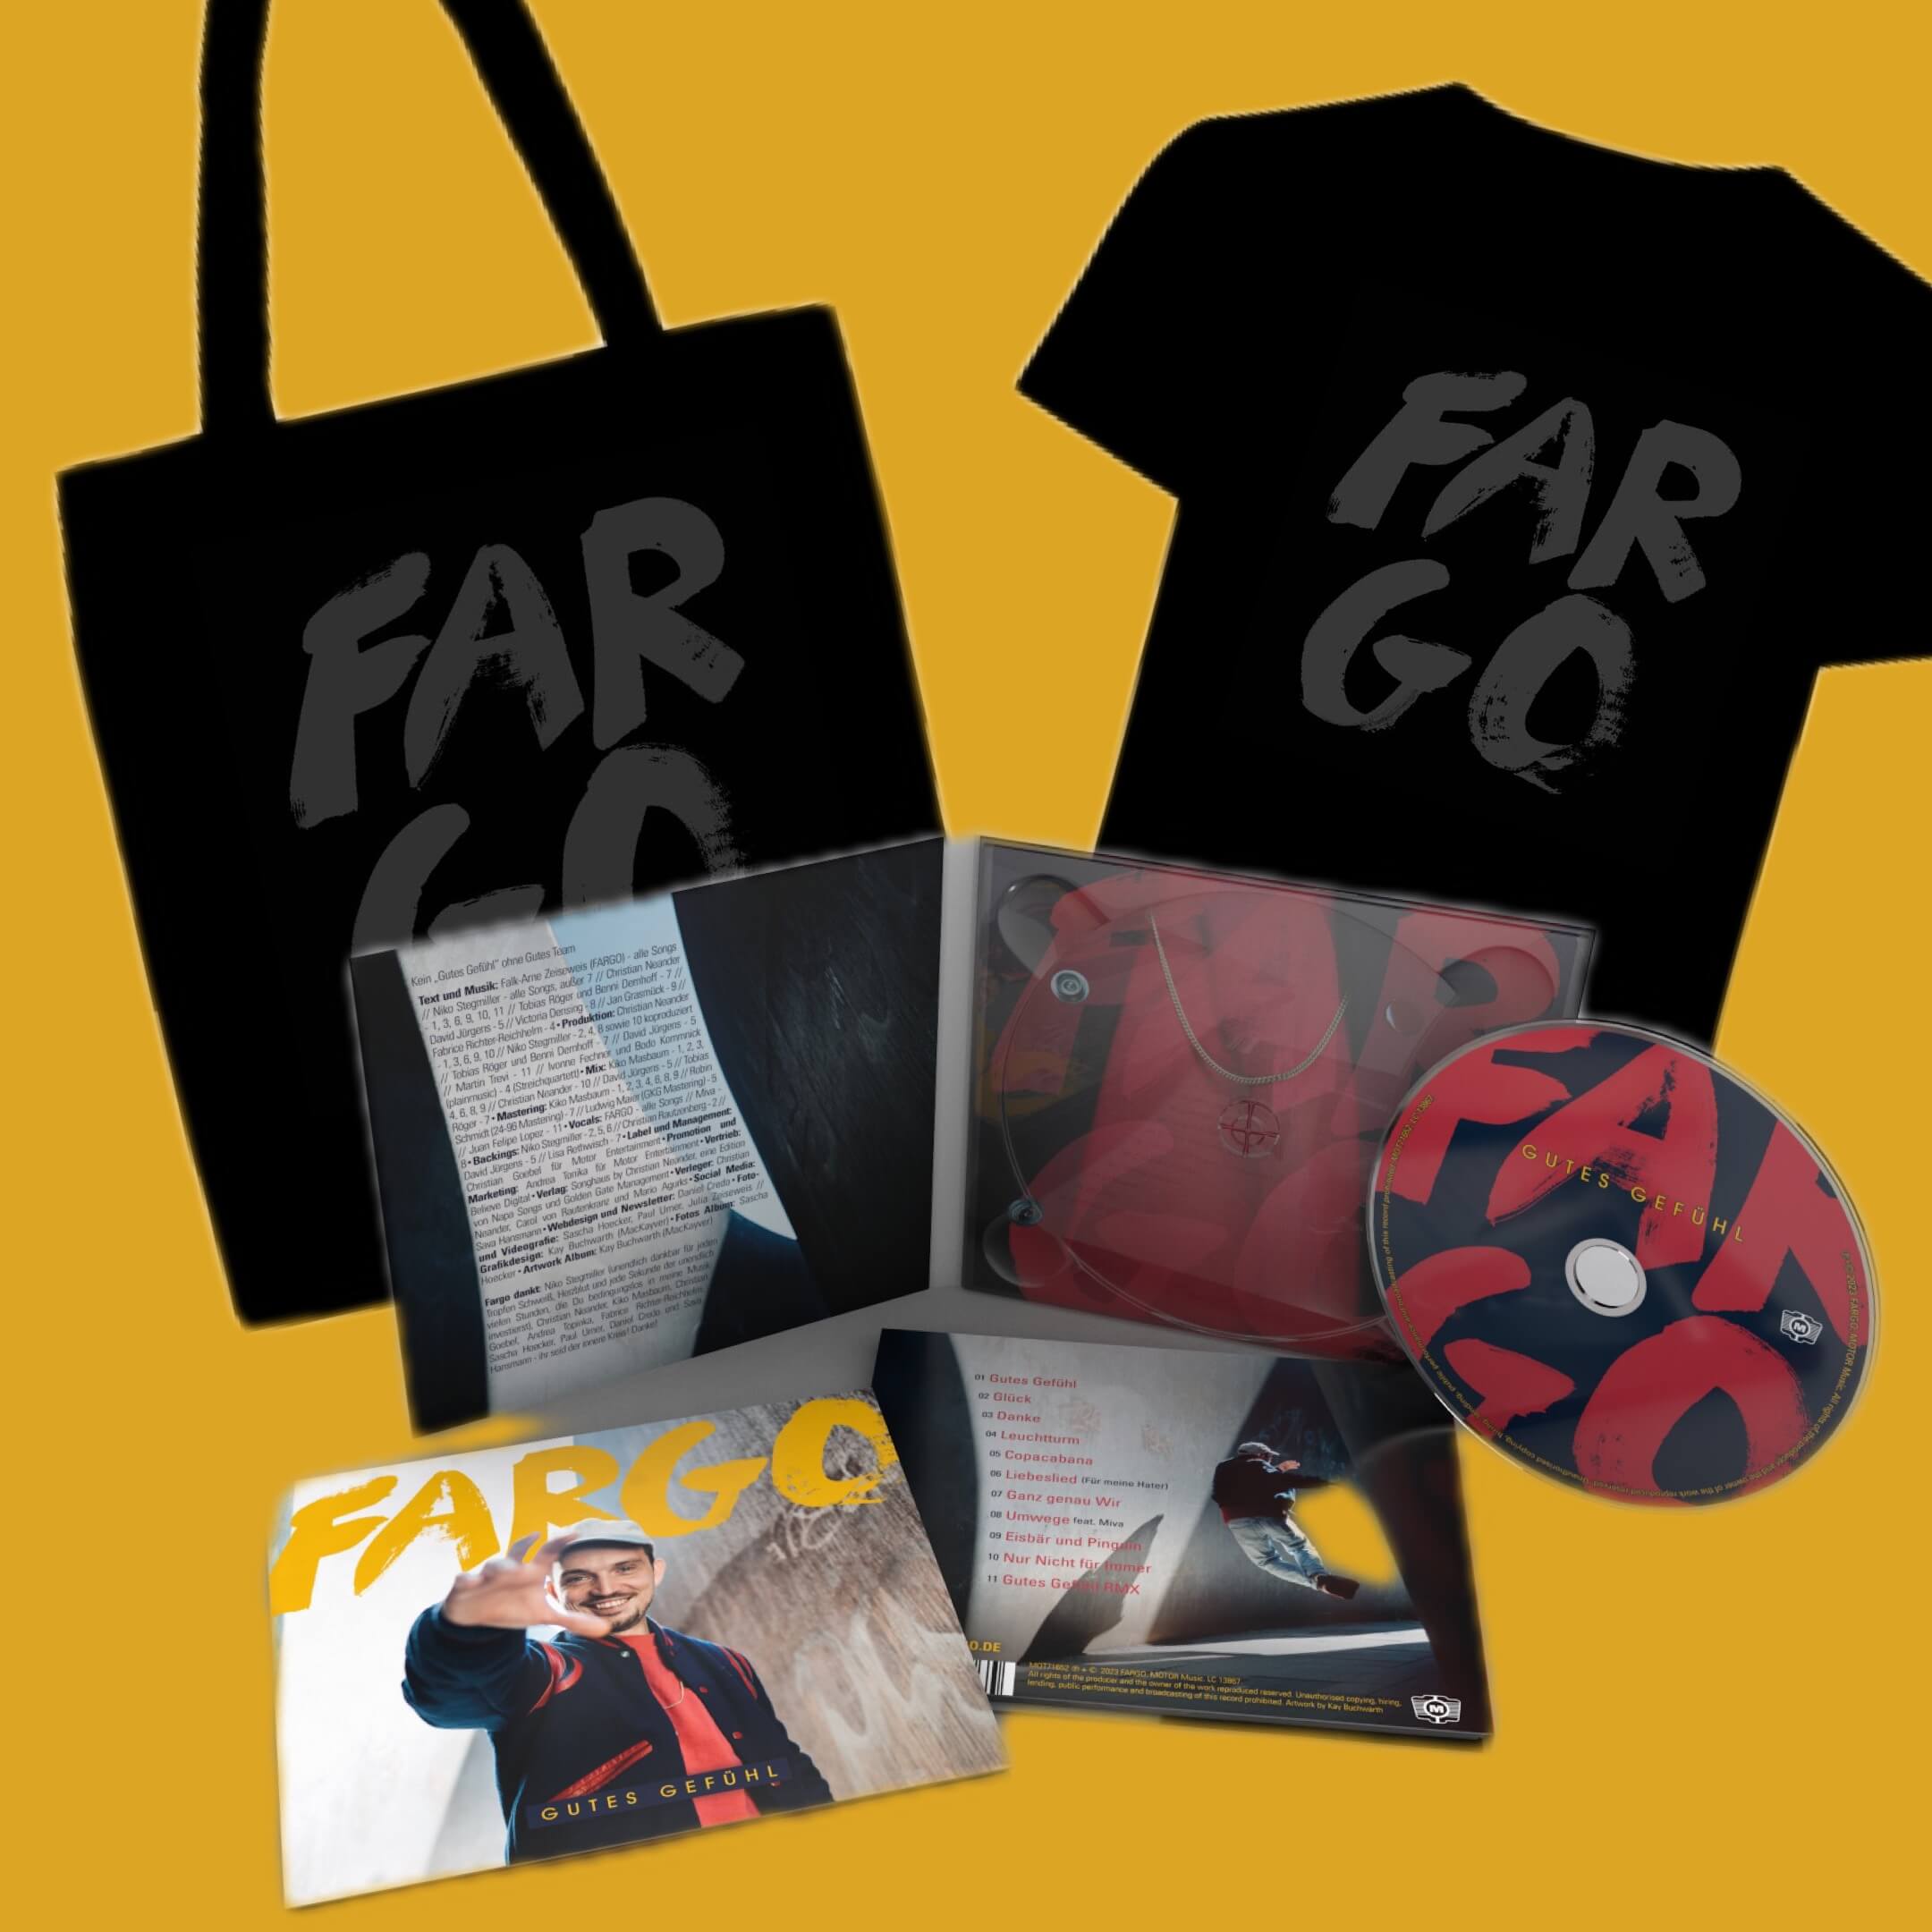 Produktbild für “FARGO - Fan-Paket Gutes Gefühl”